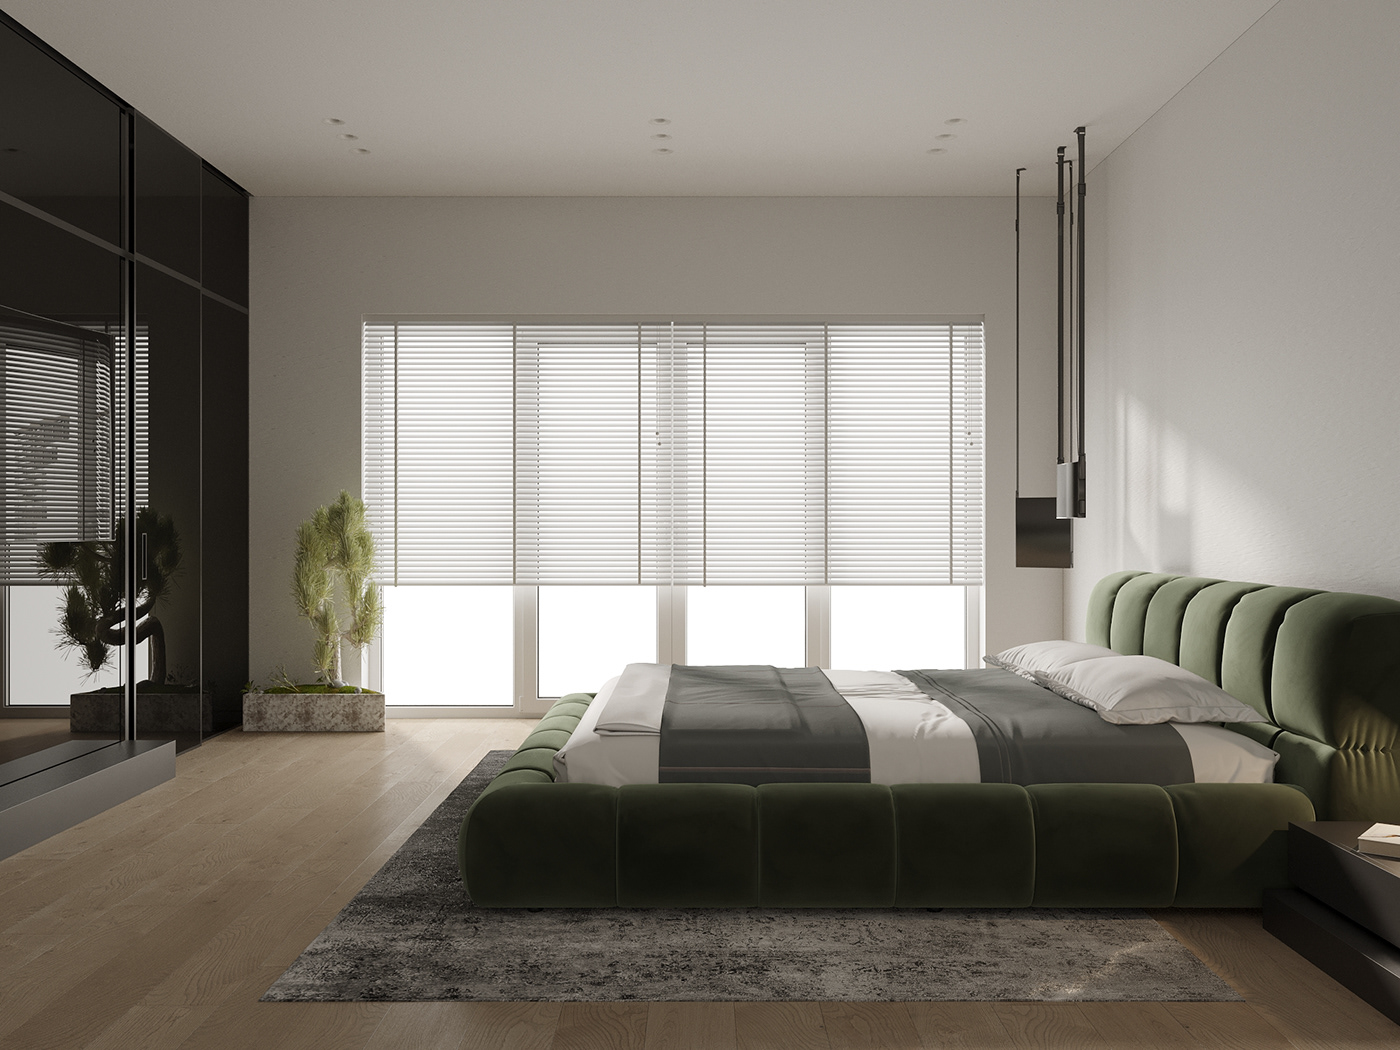 3ds max bedroom modern Render visualization